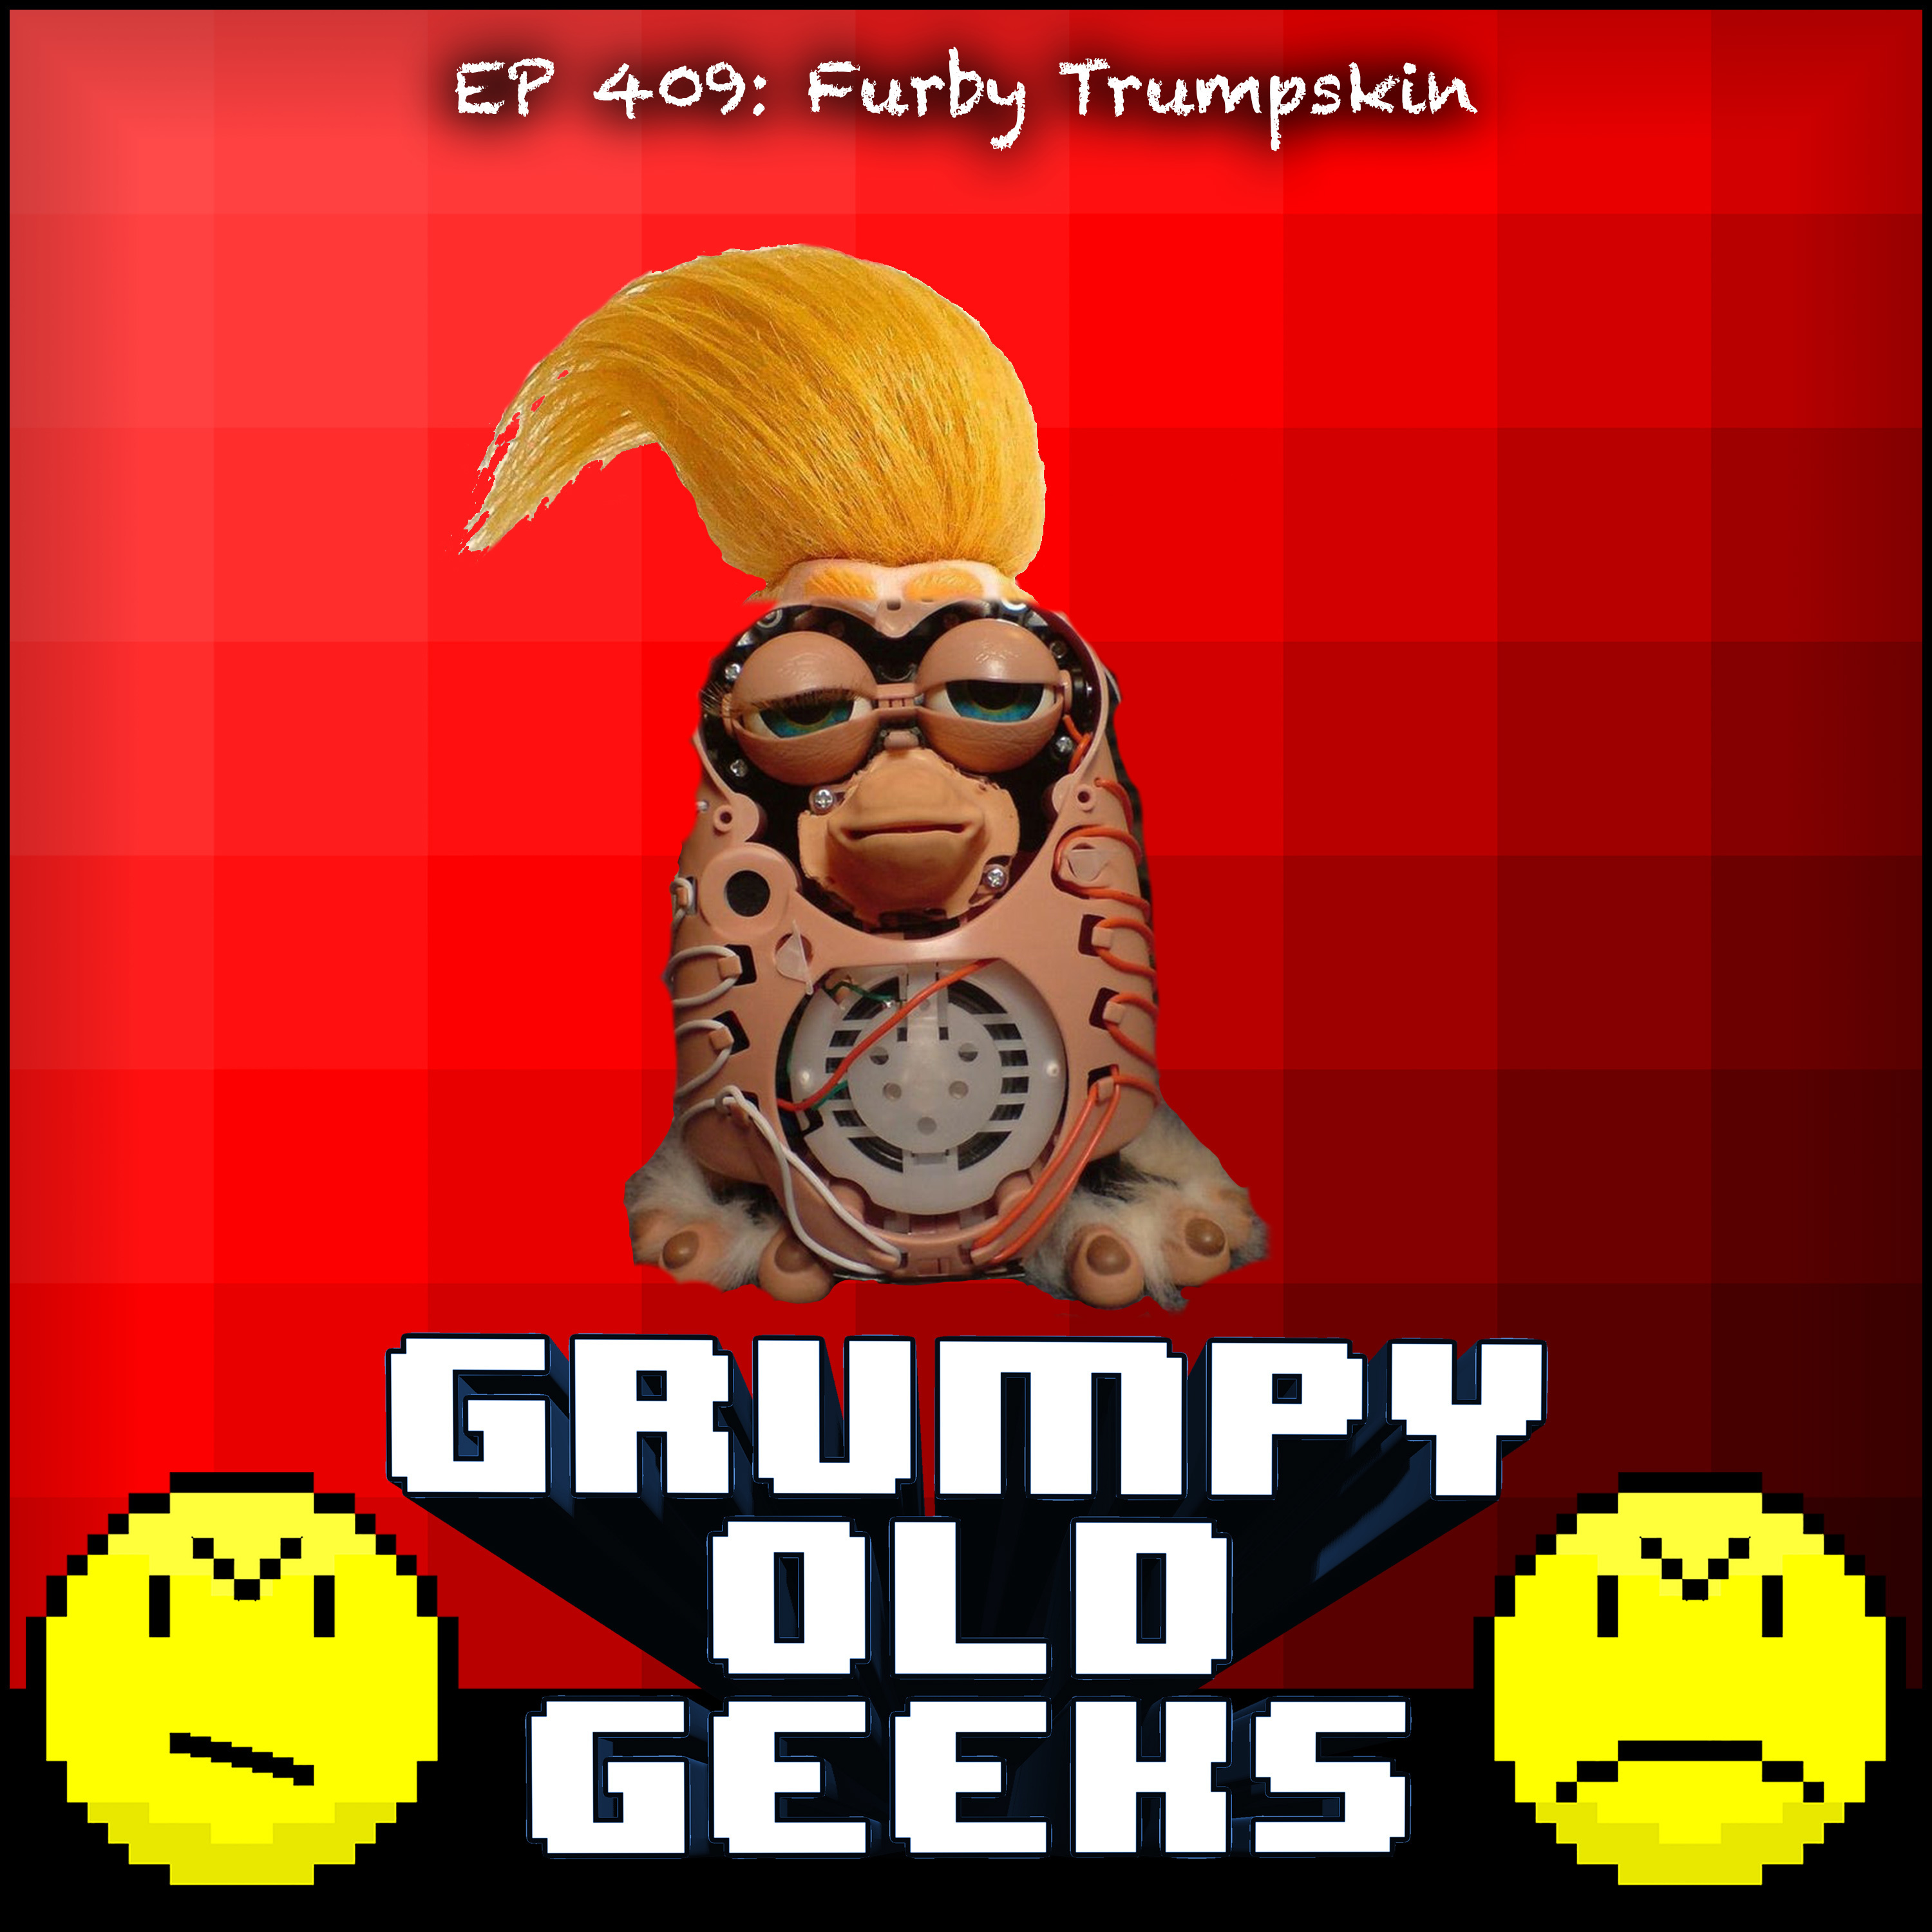 409: Furby Trumpskin